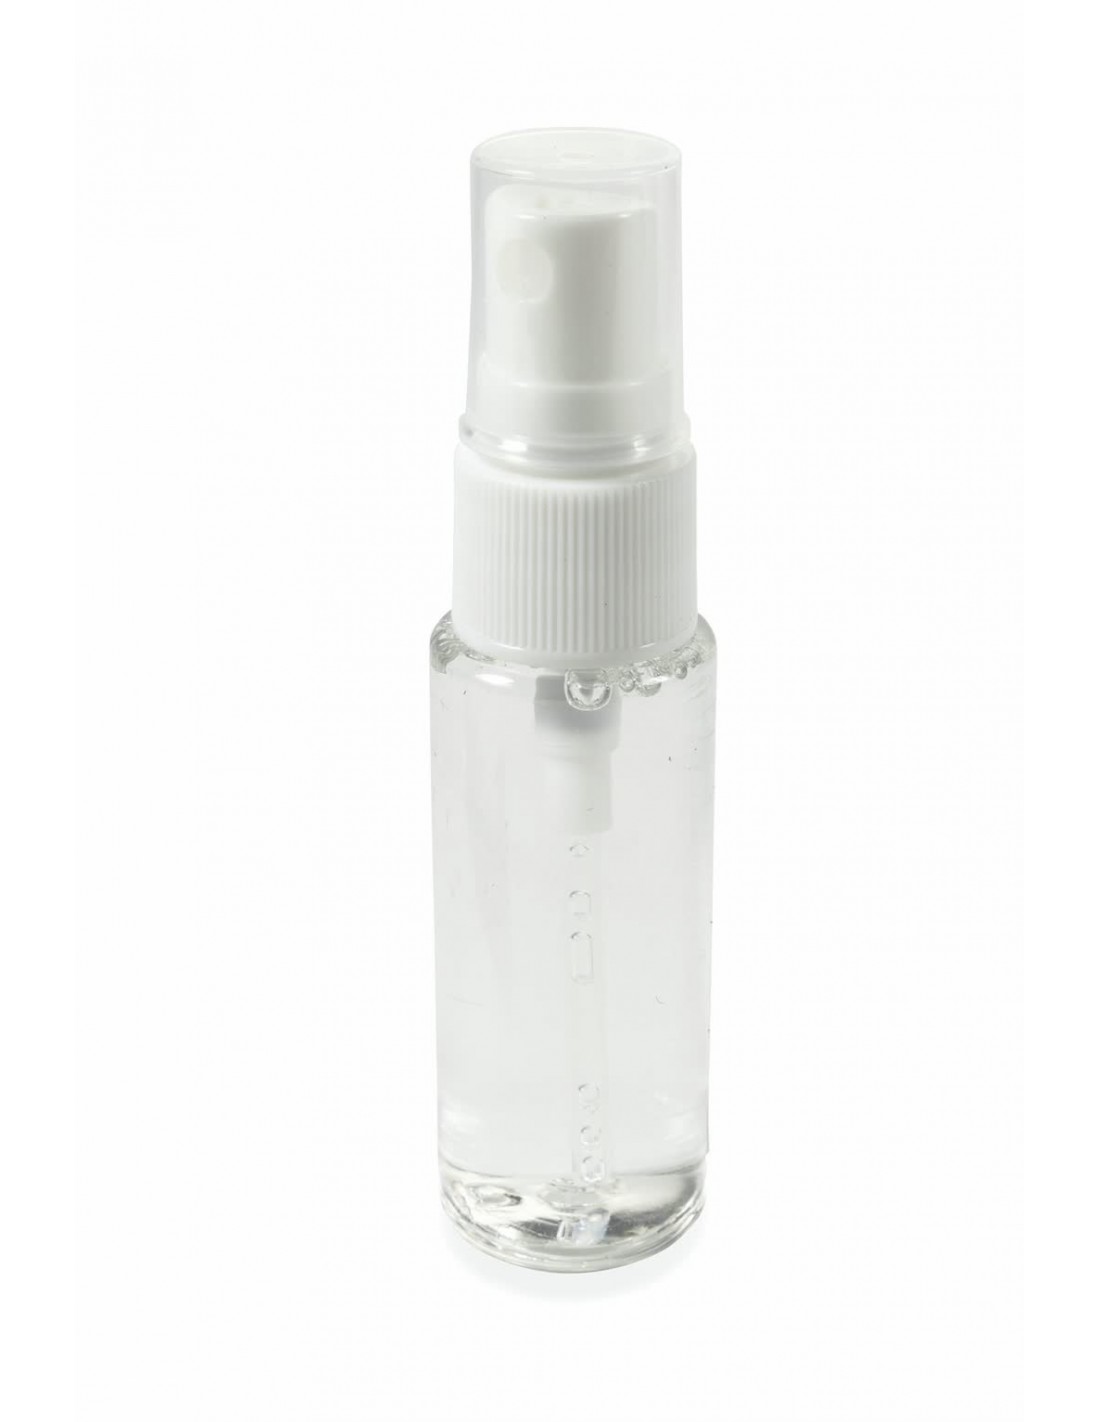  Detergente speciale per lenti e specchi comprende uno spray da 30 ml 